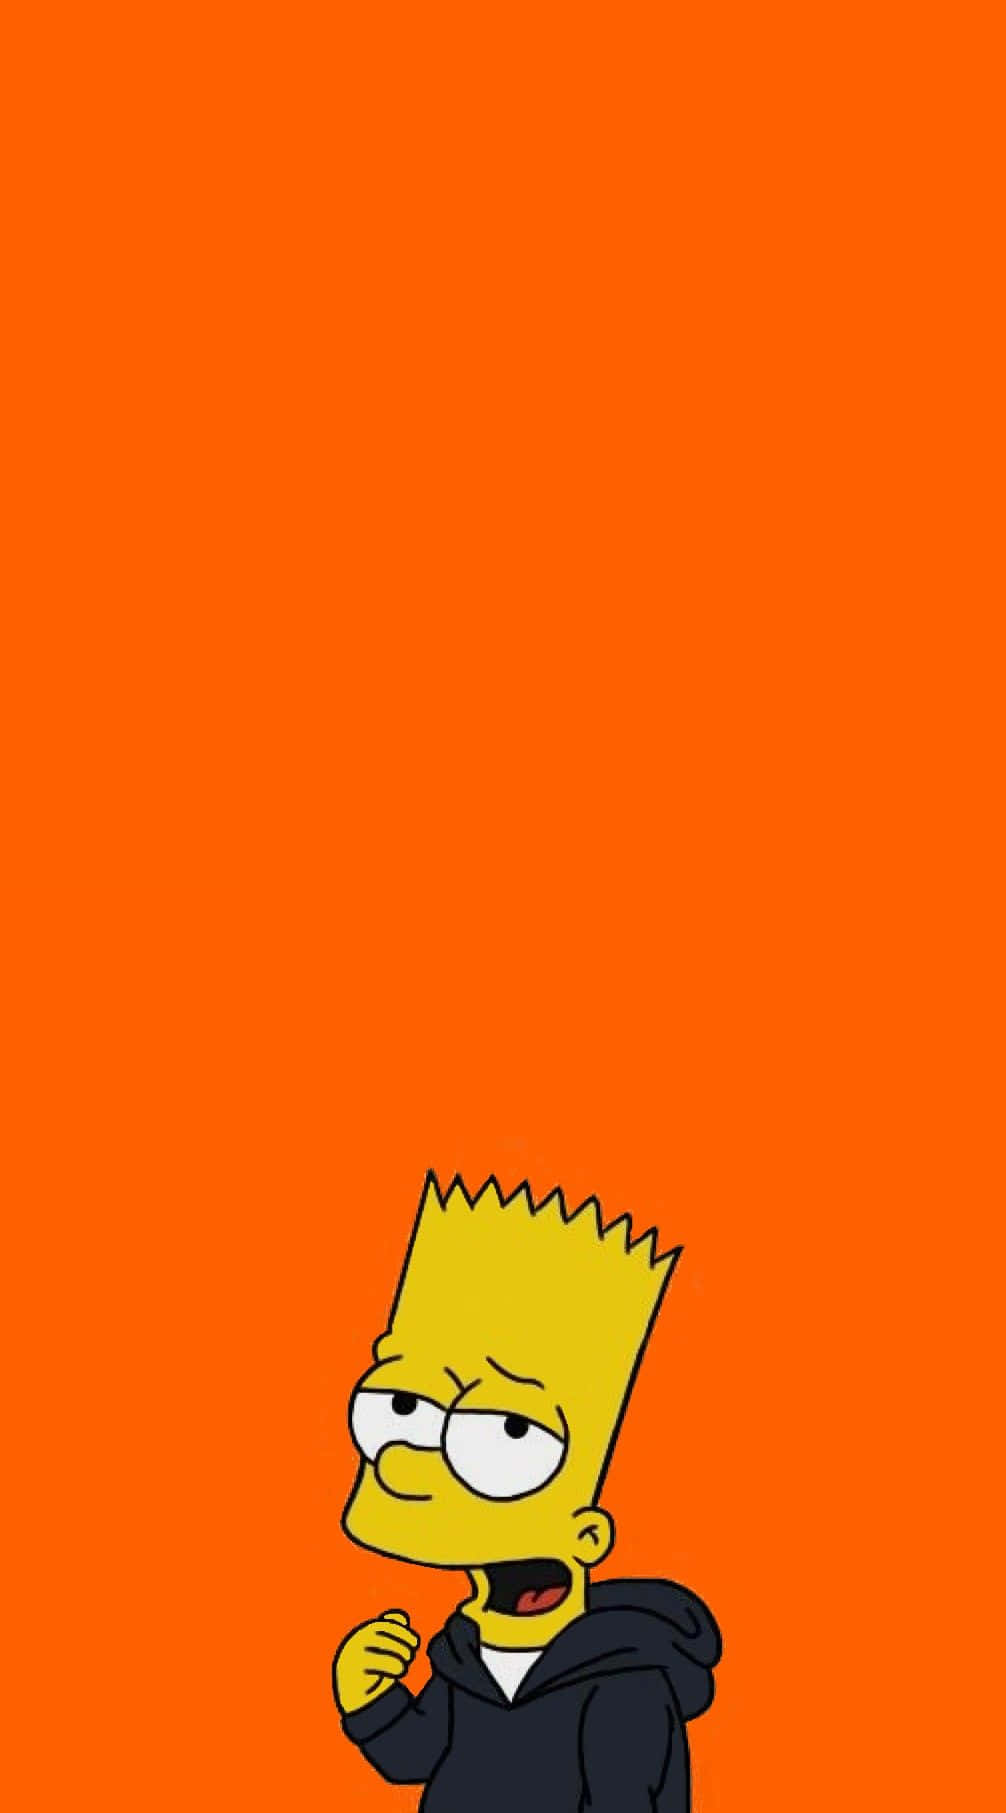 Sientela Alegría Del Verano Con Bart Simpson. Fondo de pantalla